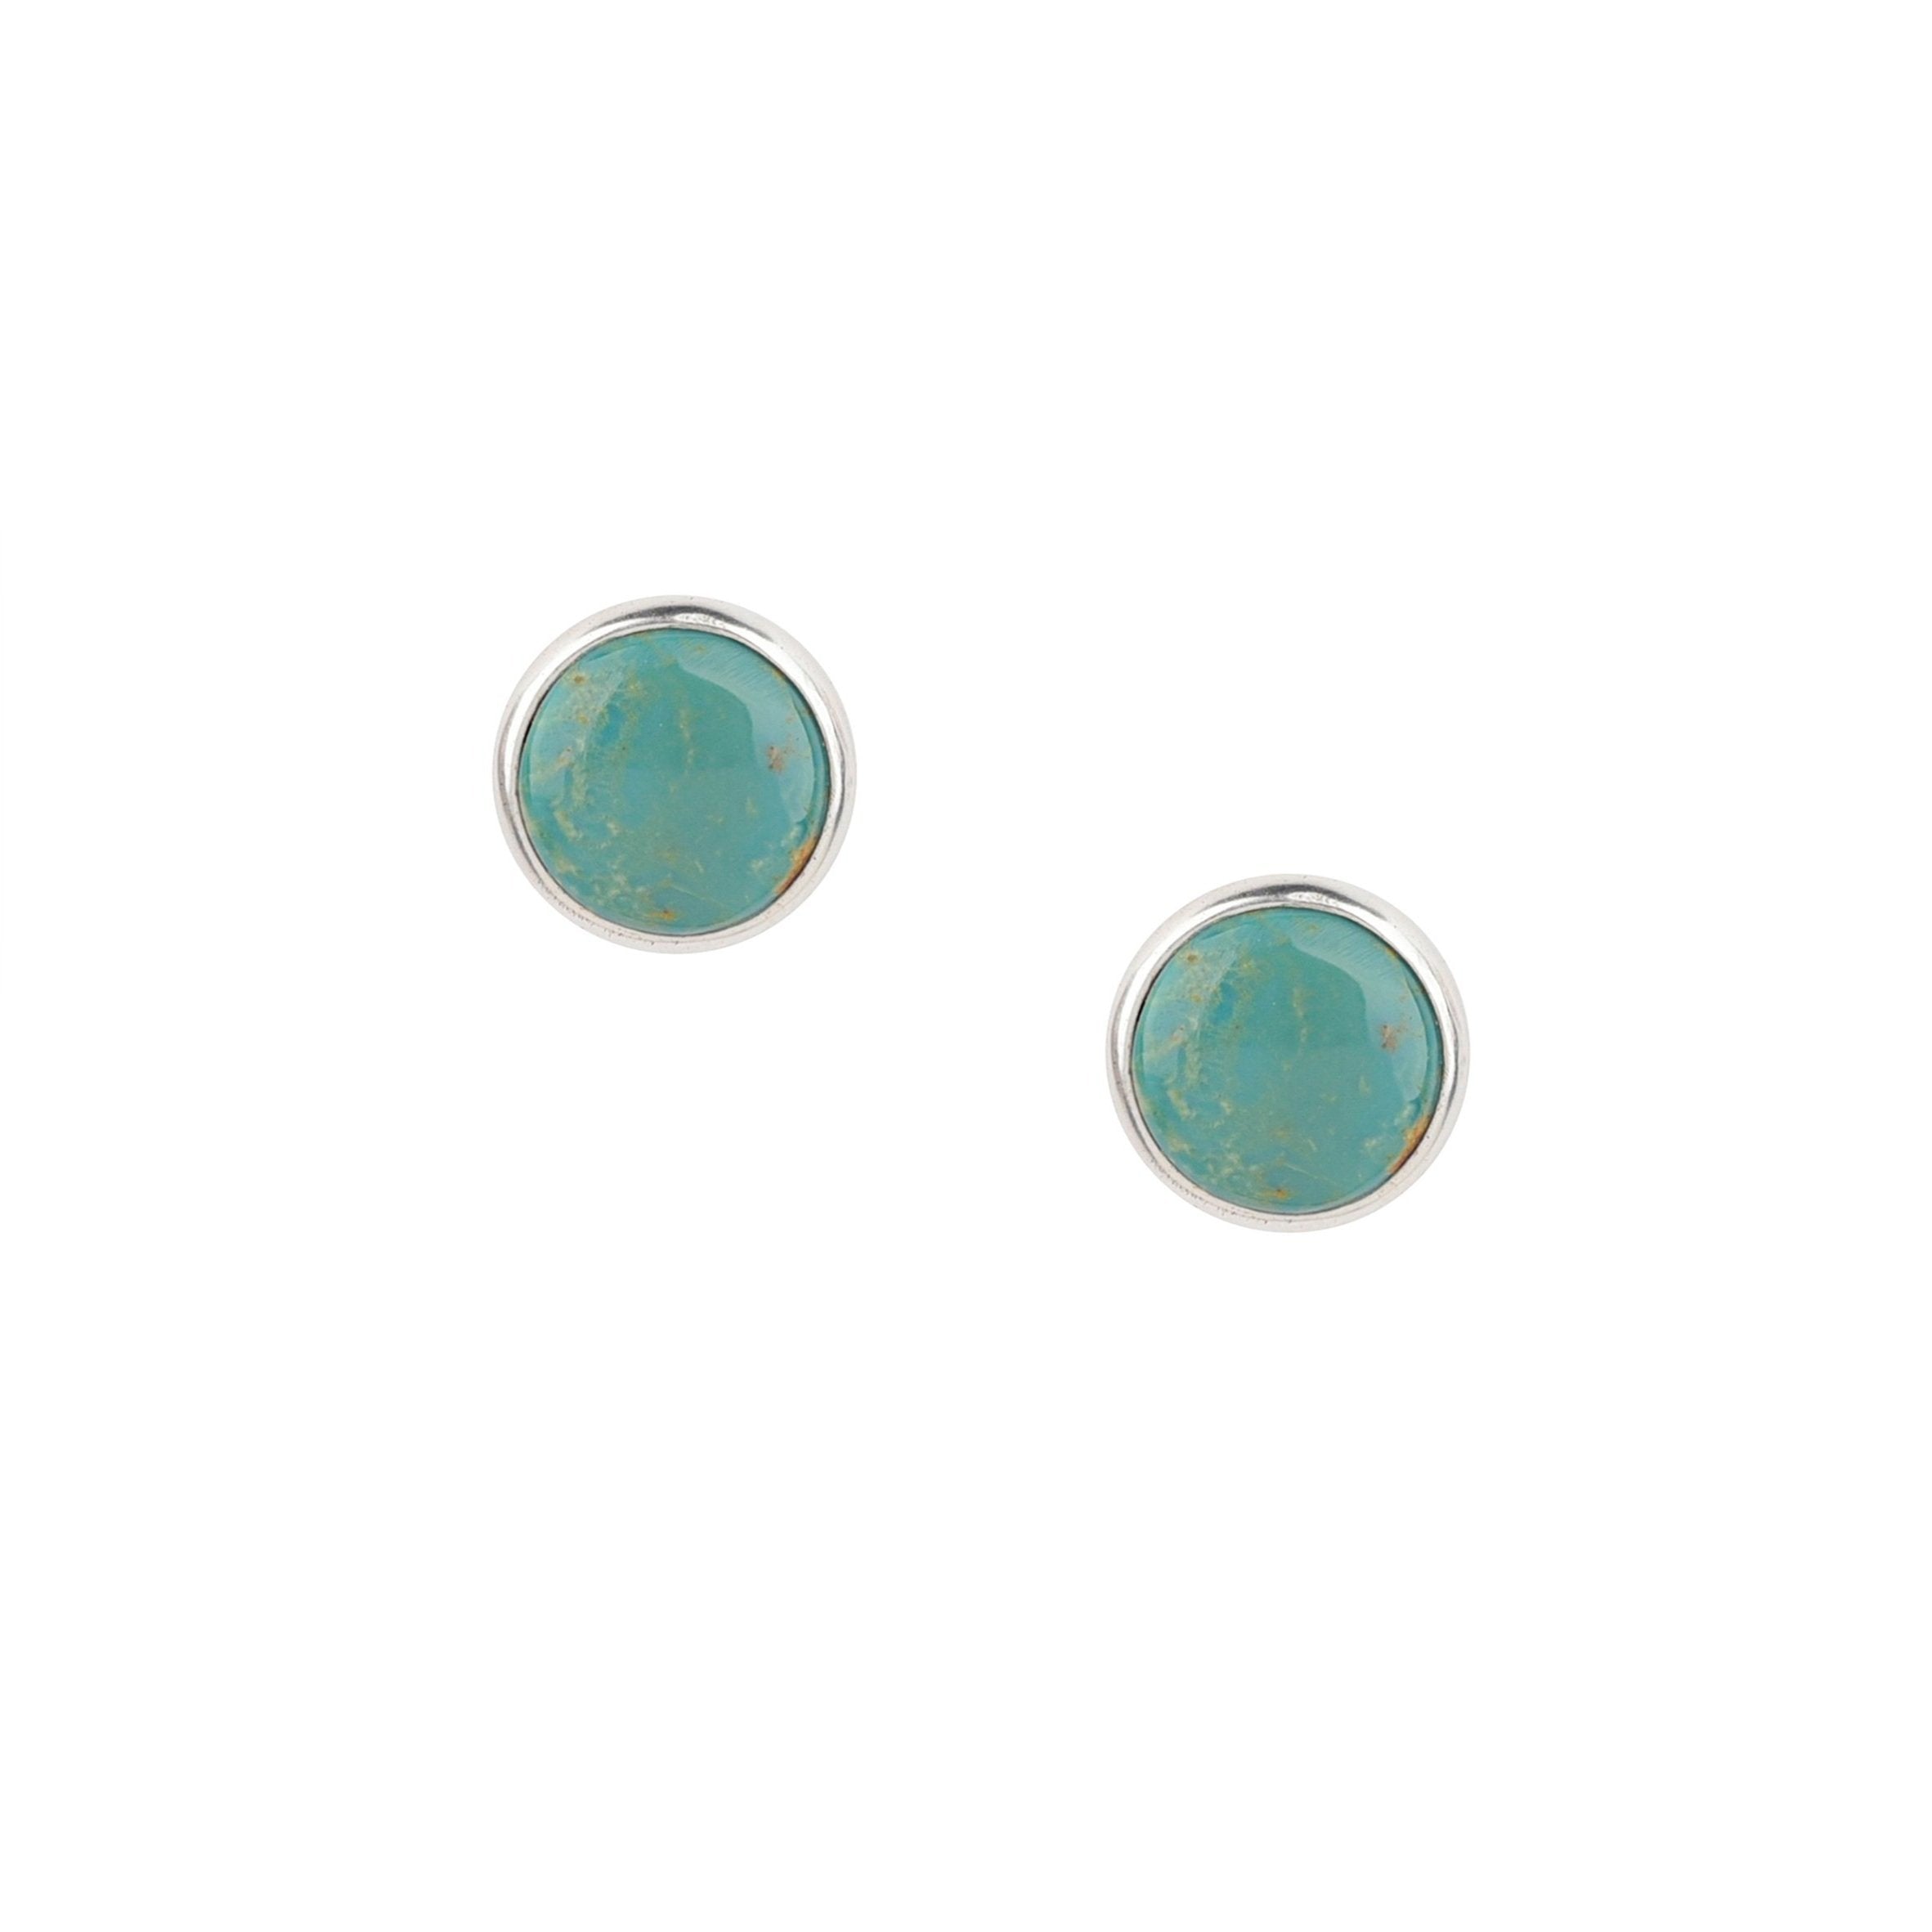 Dennis Hogan Full Moon Post Earrings - Green Turquoise